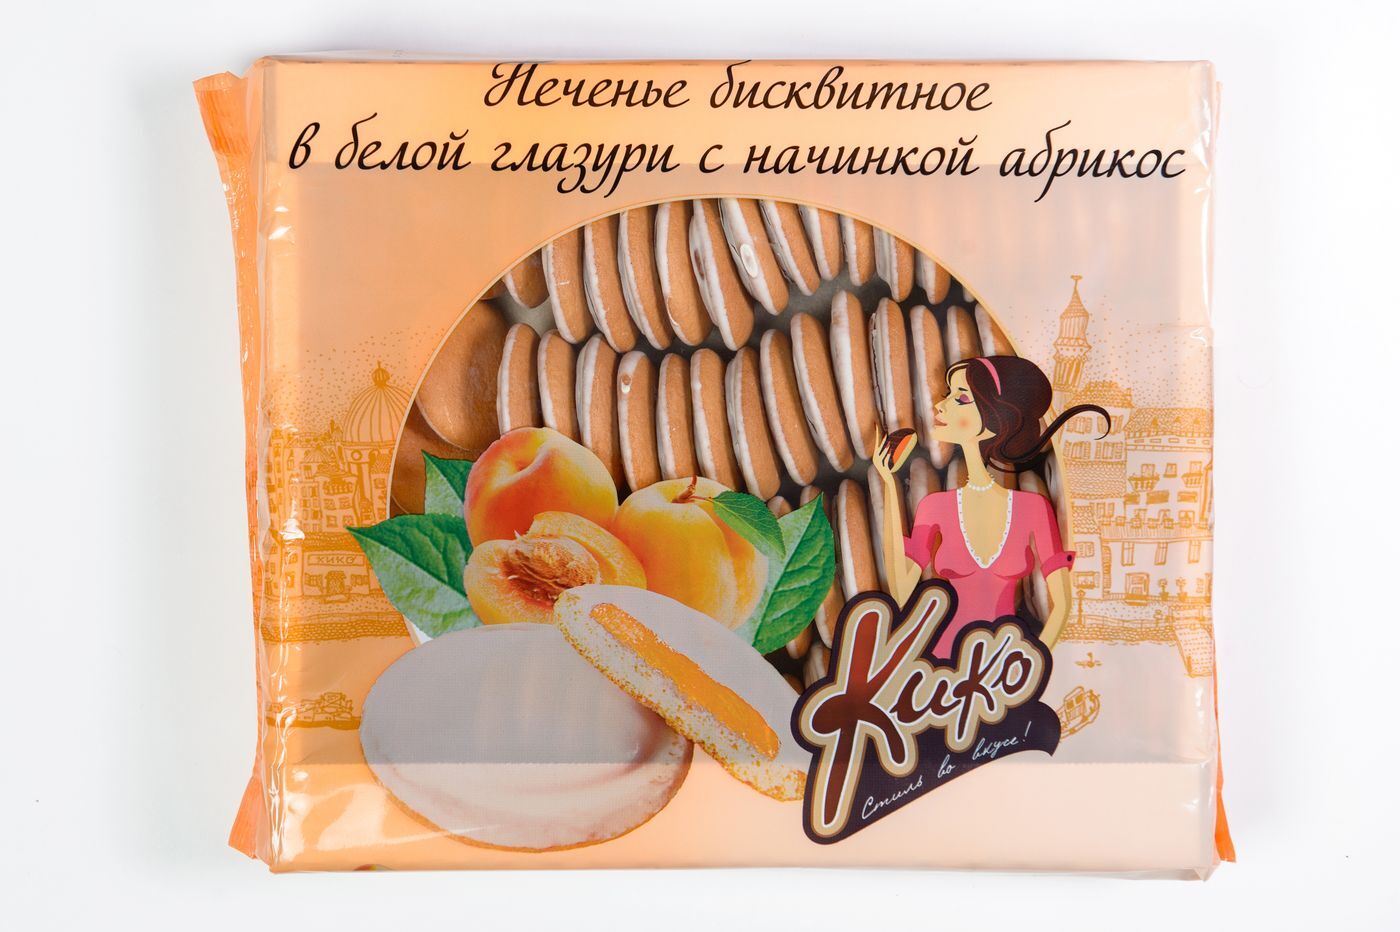 Бисквитное печенье Кико в белой глазури абрикос 1,2кг